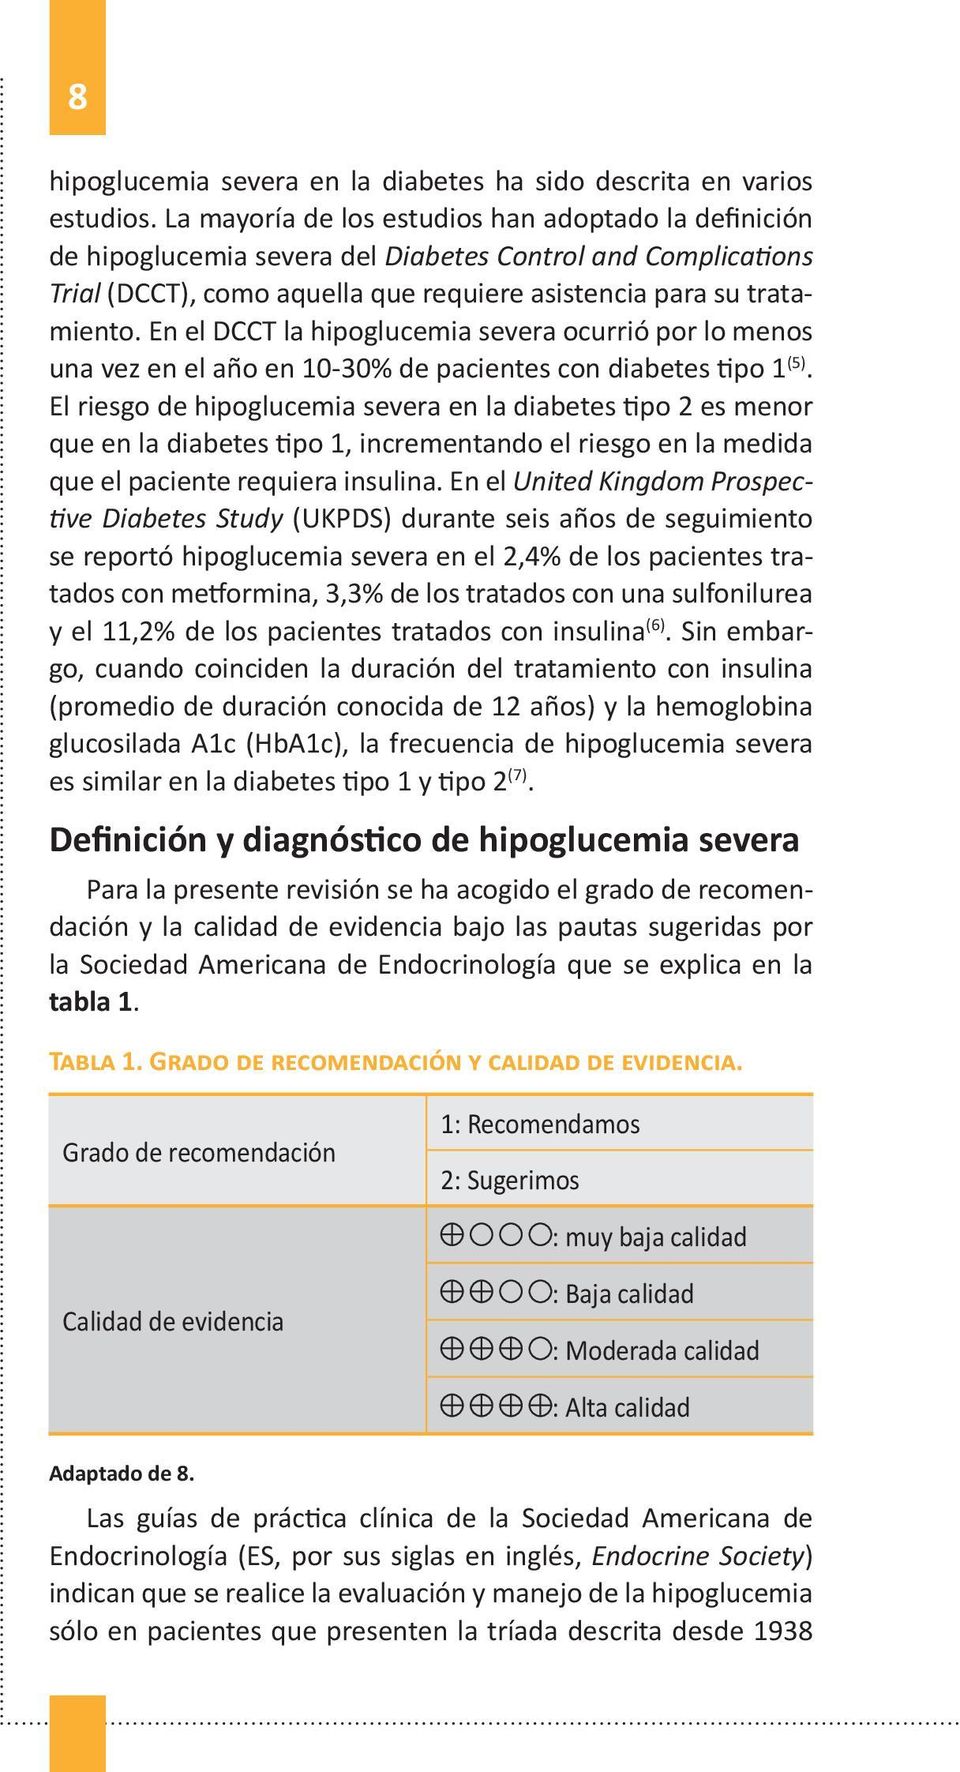 En el DCCT la hipoglucemia severa ocurrió por lo menos una vez en el año en 10-30% de pacientes con diabetes tipo 1 (5).